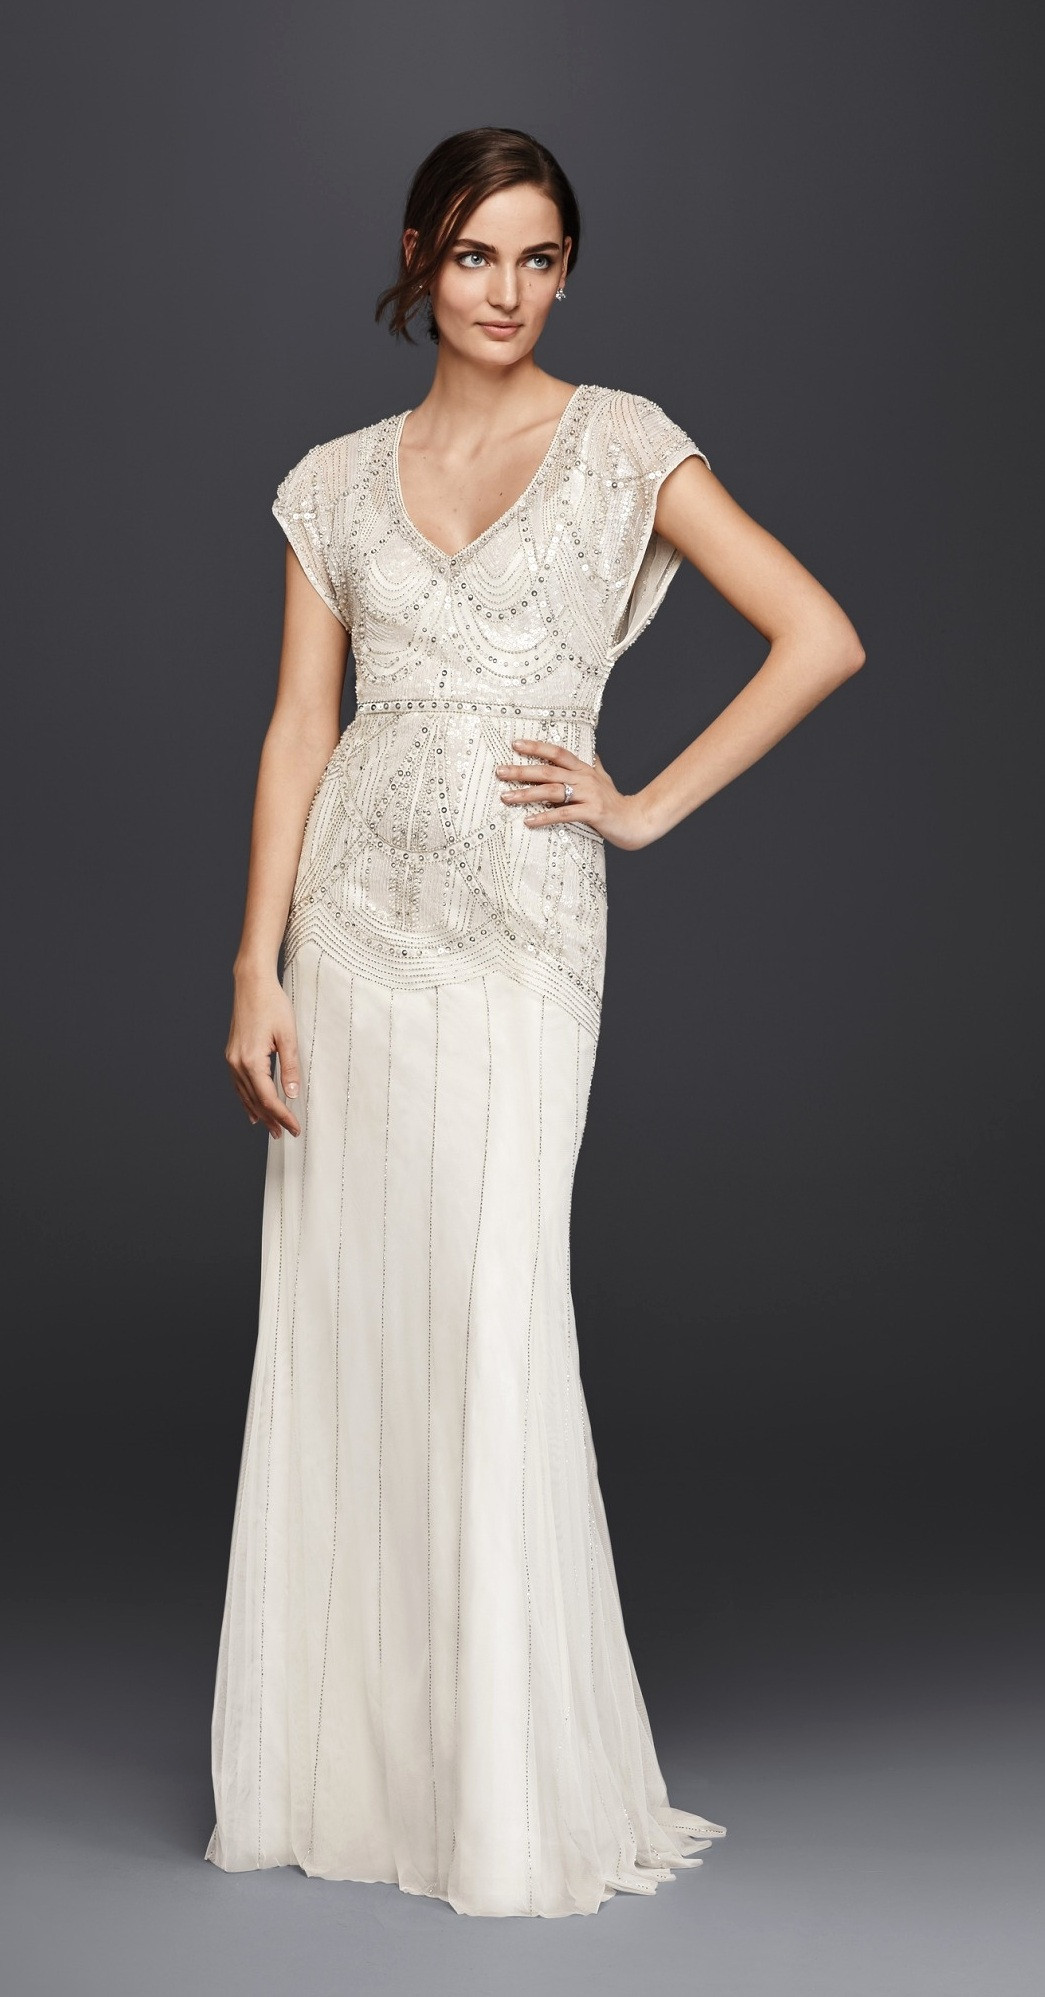 Sheath Wedding Gowns
 15 Most Popular Designs for Sheath Wedding Dresses